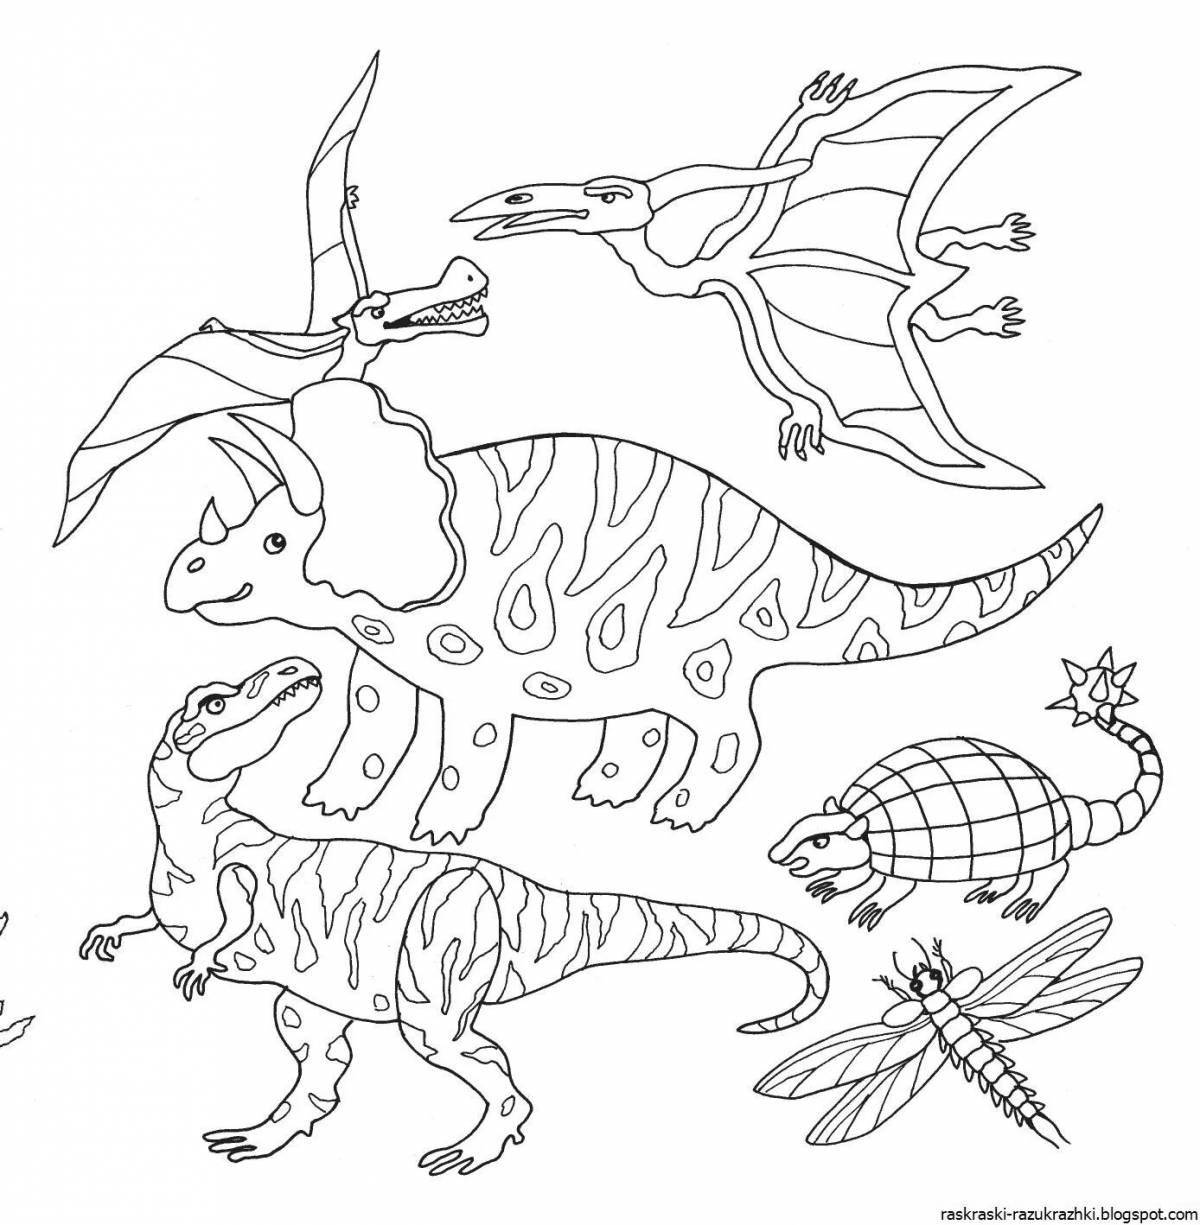 Веселая раскраска динозавров для детей 7-8 лет